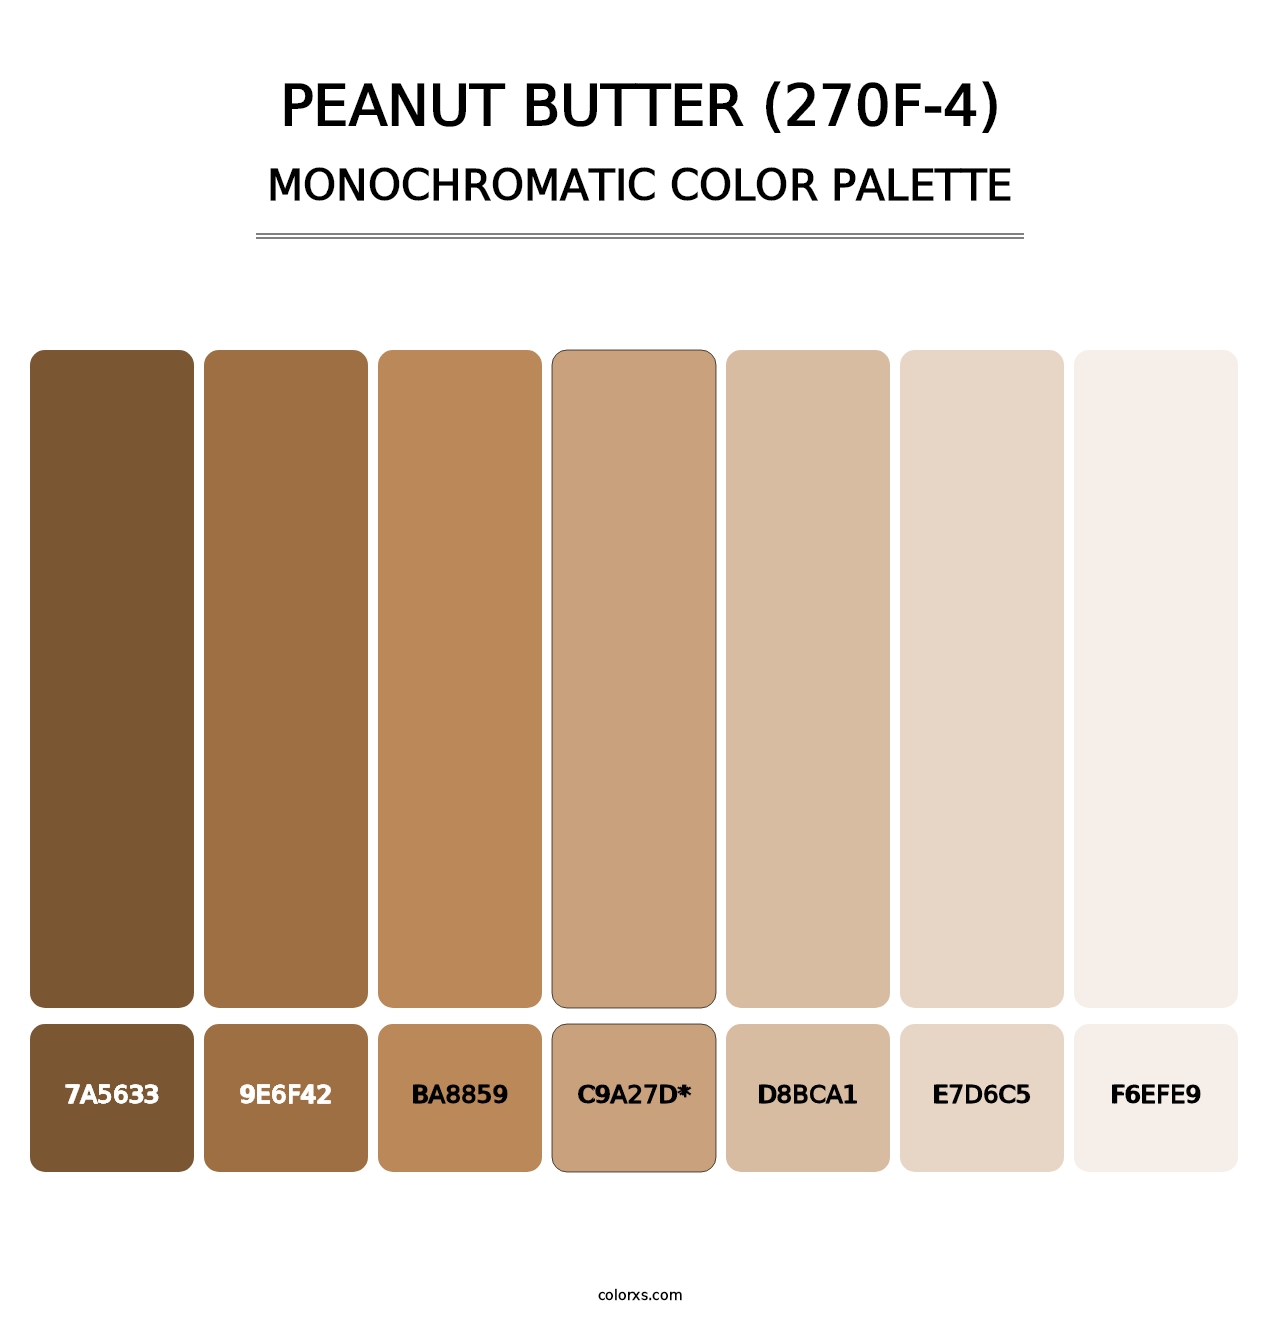 Peanut Butter (270F-4) - Monochromatic Color Palette